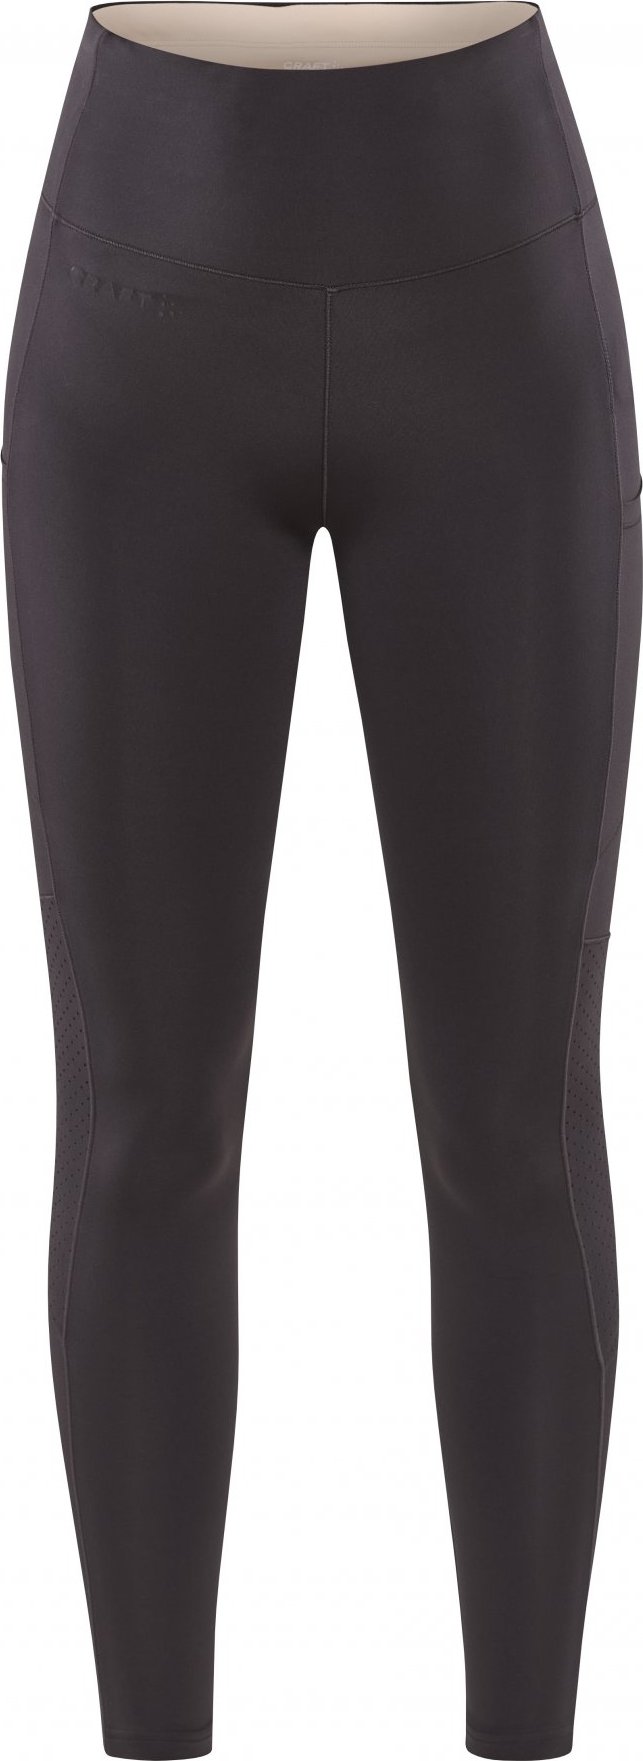 Dámské elastické kalhoty CRAFT Adv Essence 2 šedé Velikost: M